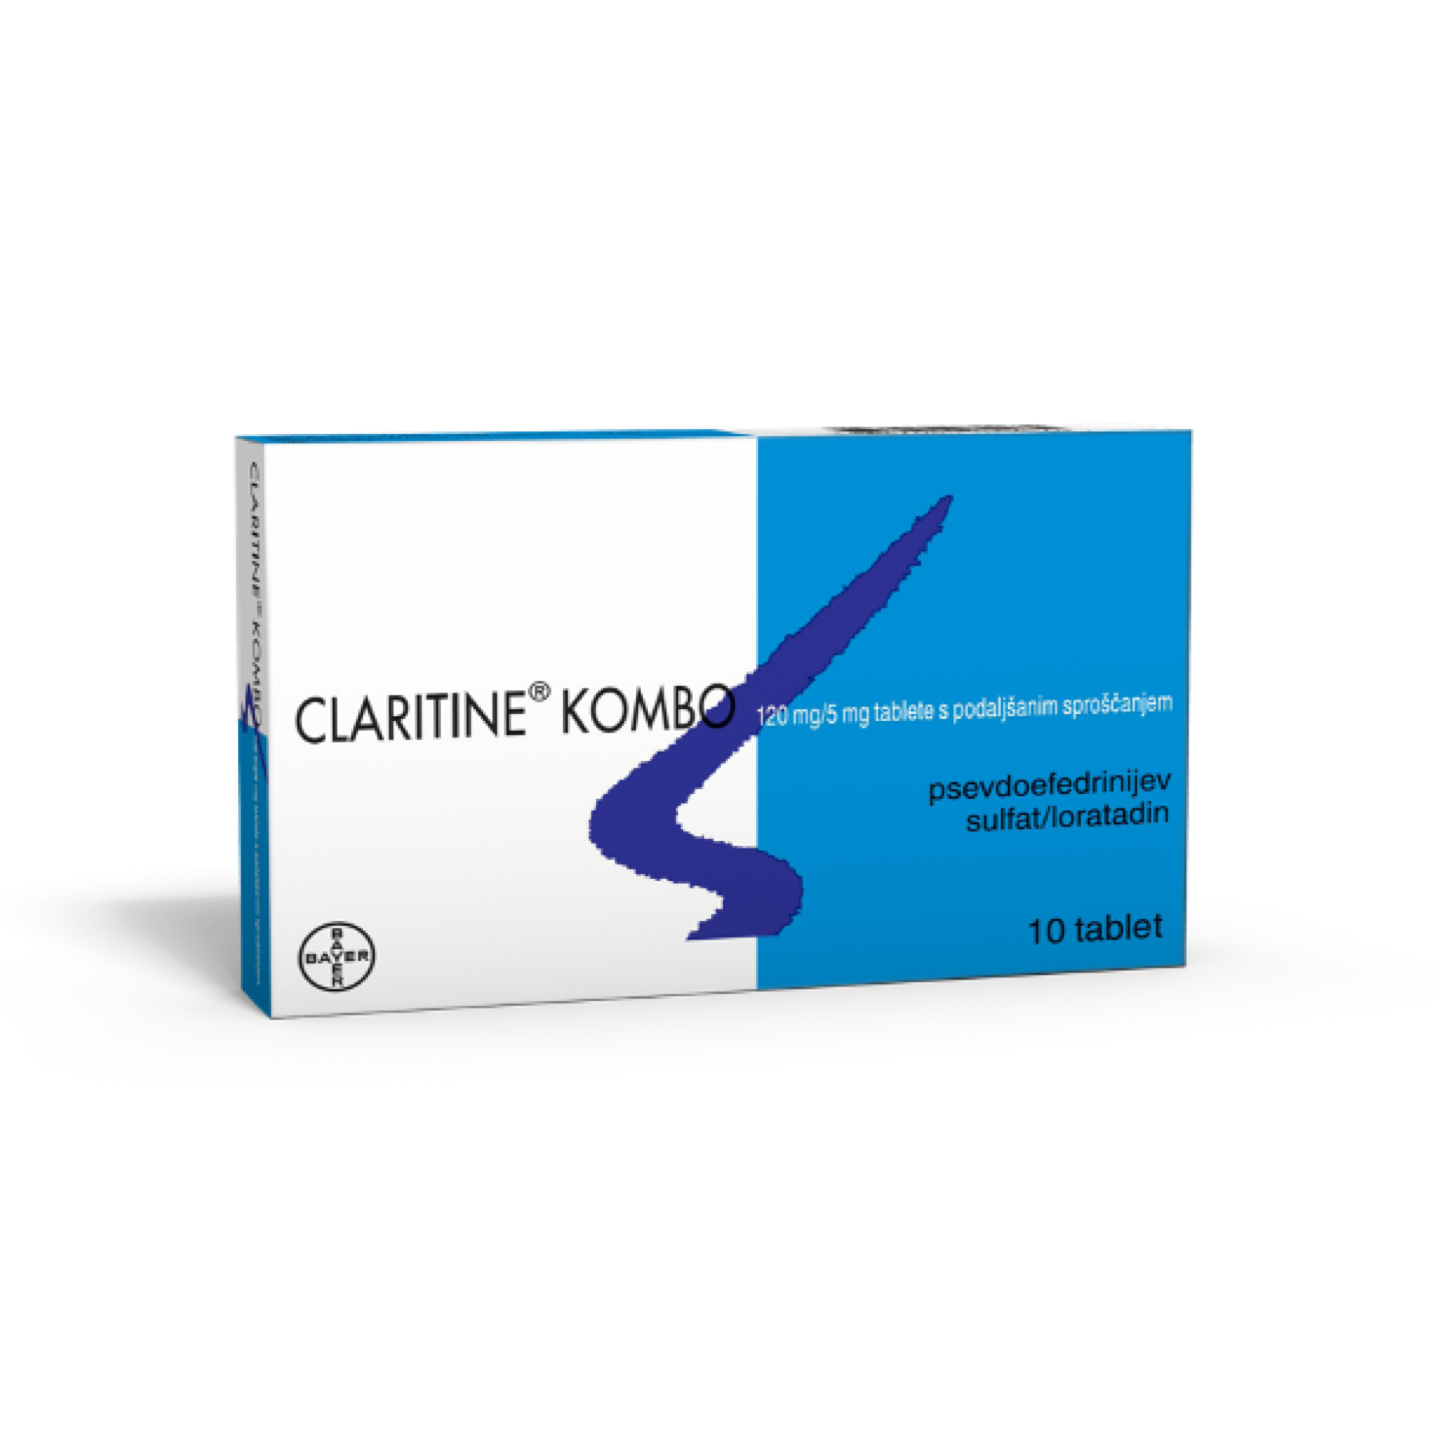 Claritine Kombo